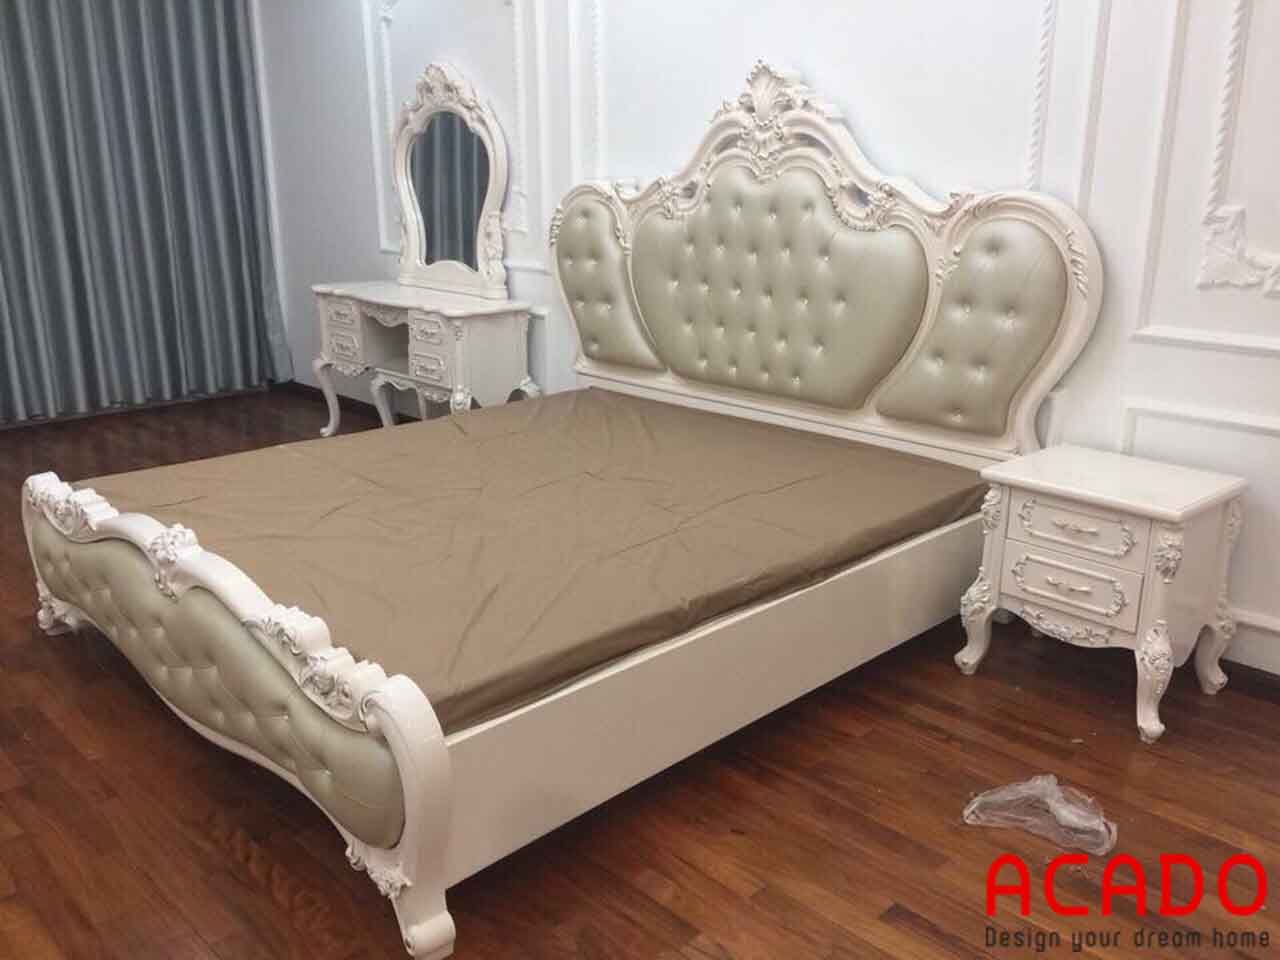 Giường ngủ hoàng gia thiết kế kiểu dáng tân cổ điển - nội thất Acado